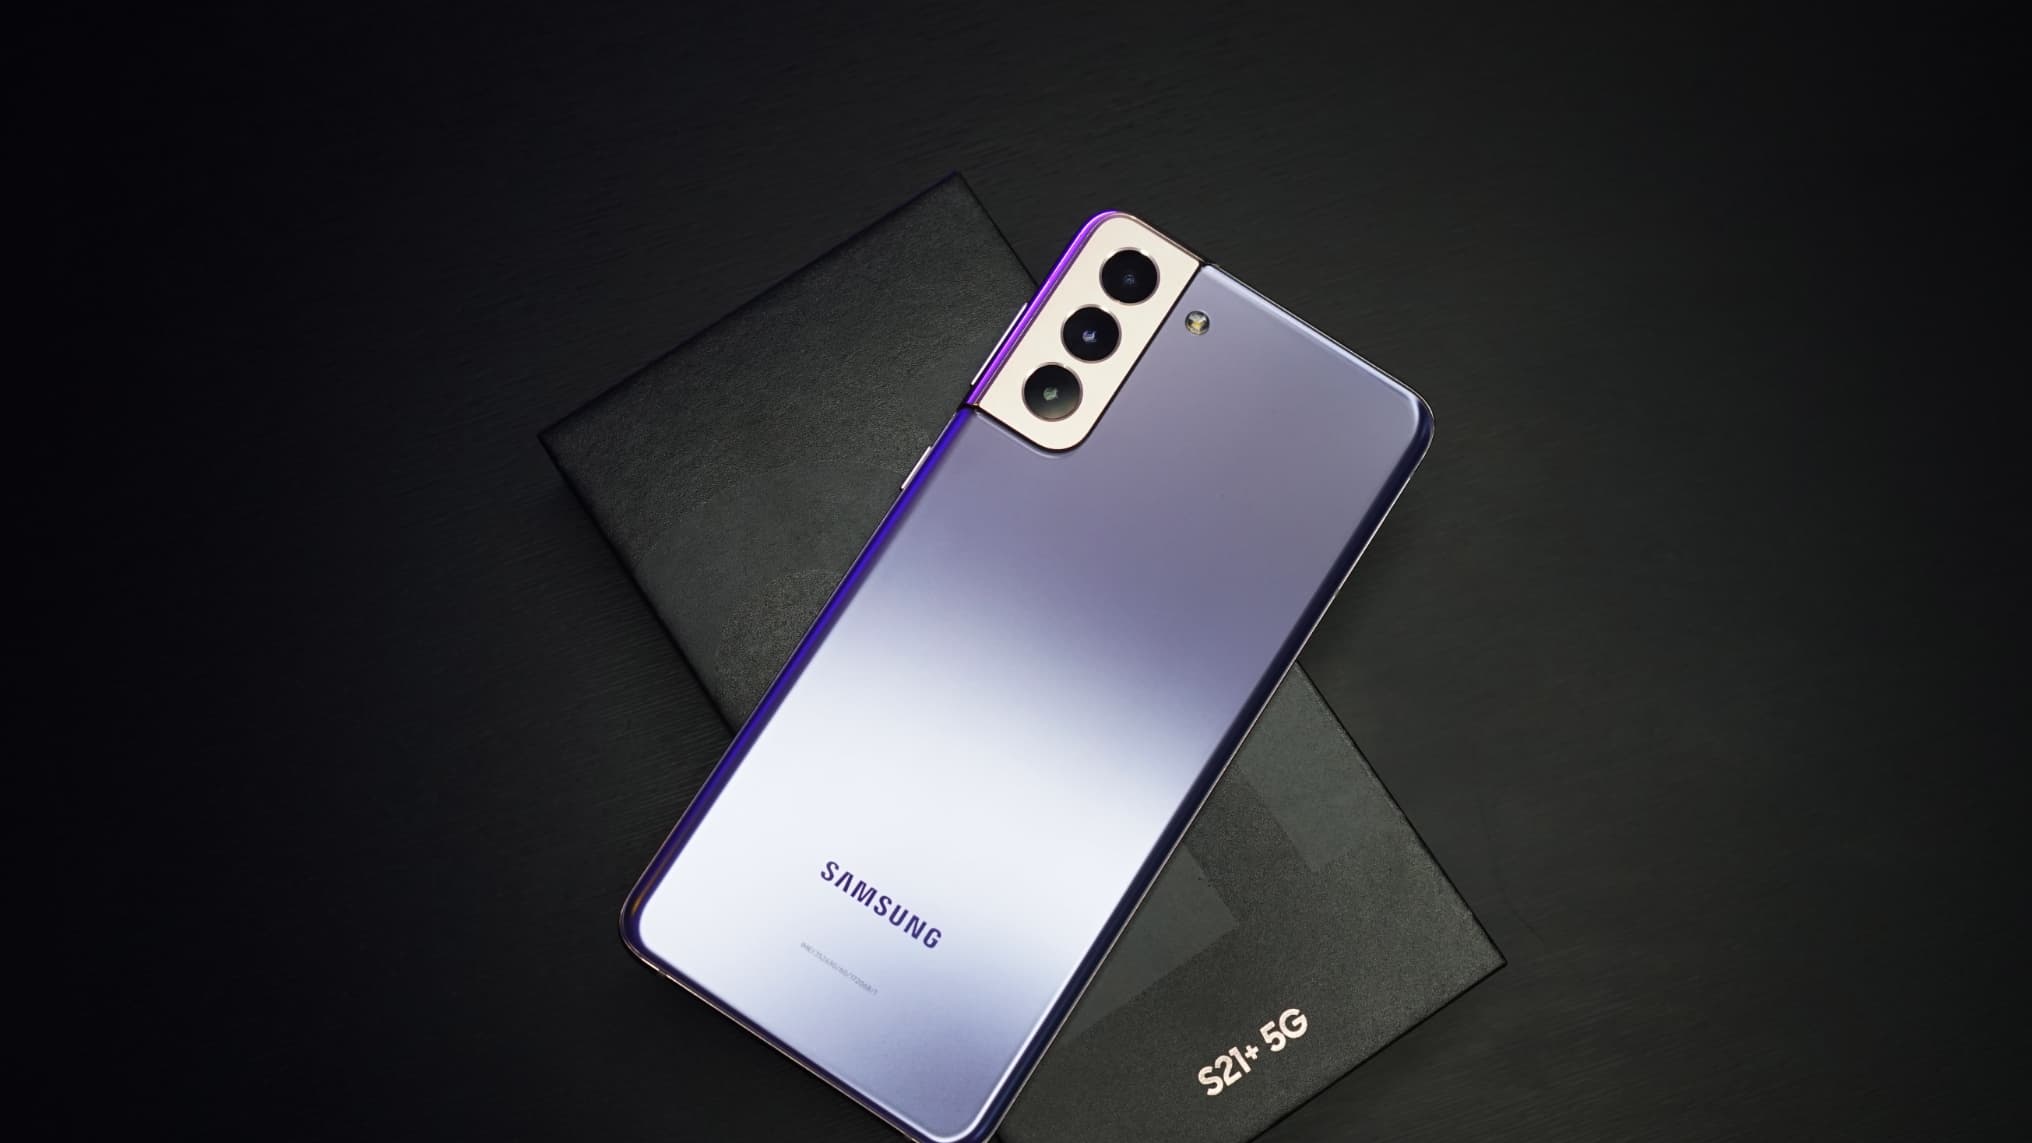 Le Samsung Galaxy S21 5G chute drastiquement de prix et passe à moins de  270 euros (-69%) 